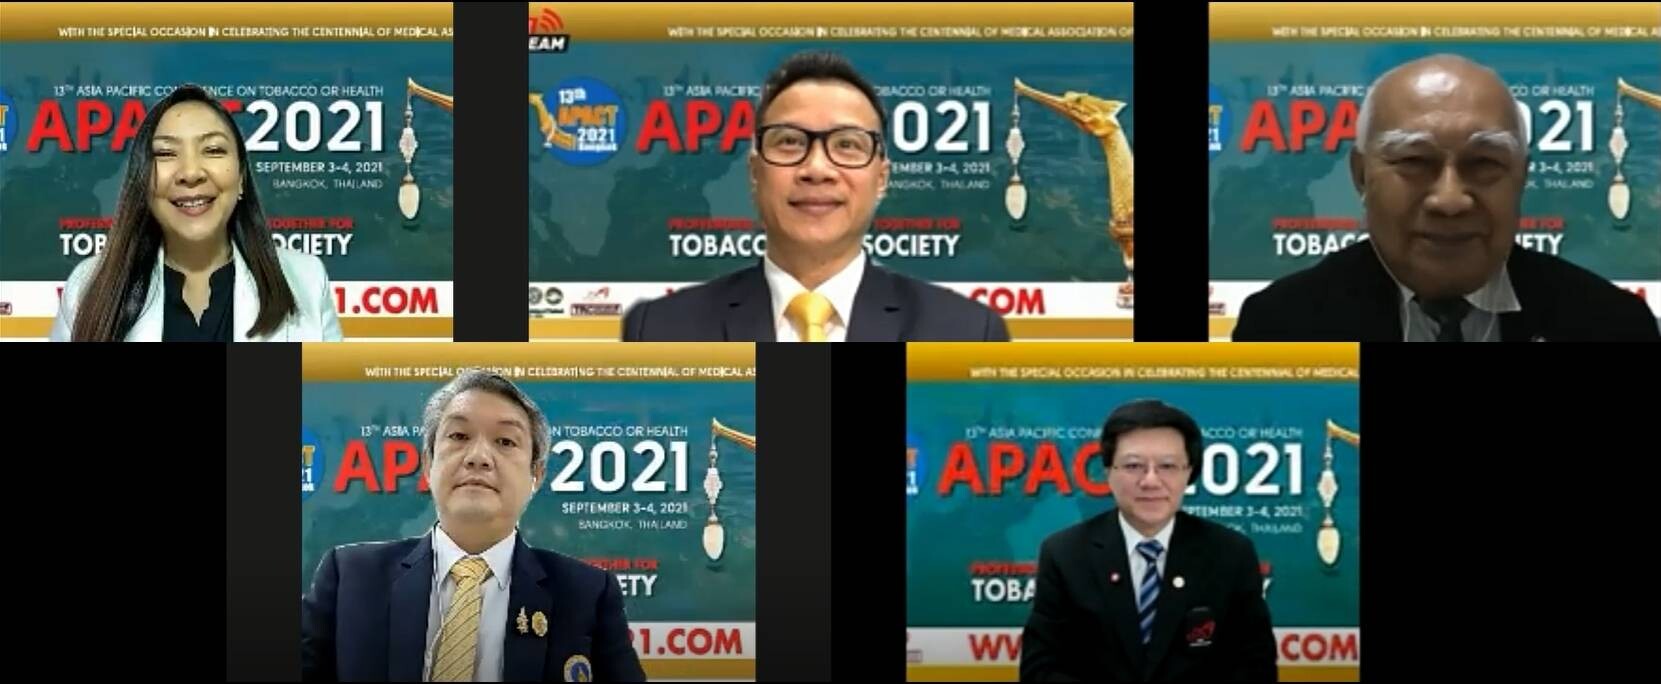 ภาคีเครือข่ายต้านยาสูบเอเชีย-แปซิฟิก 40 ชาติ เข้าร่วมงานประชุม 13th APACT 2021 Bangkok